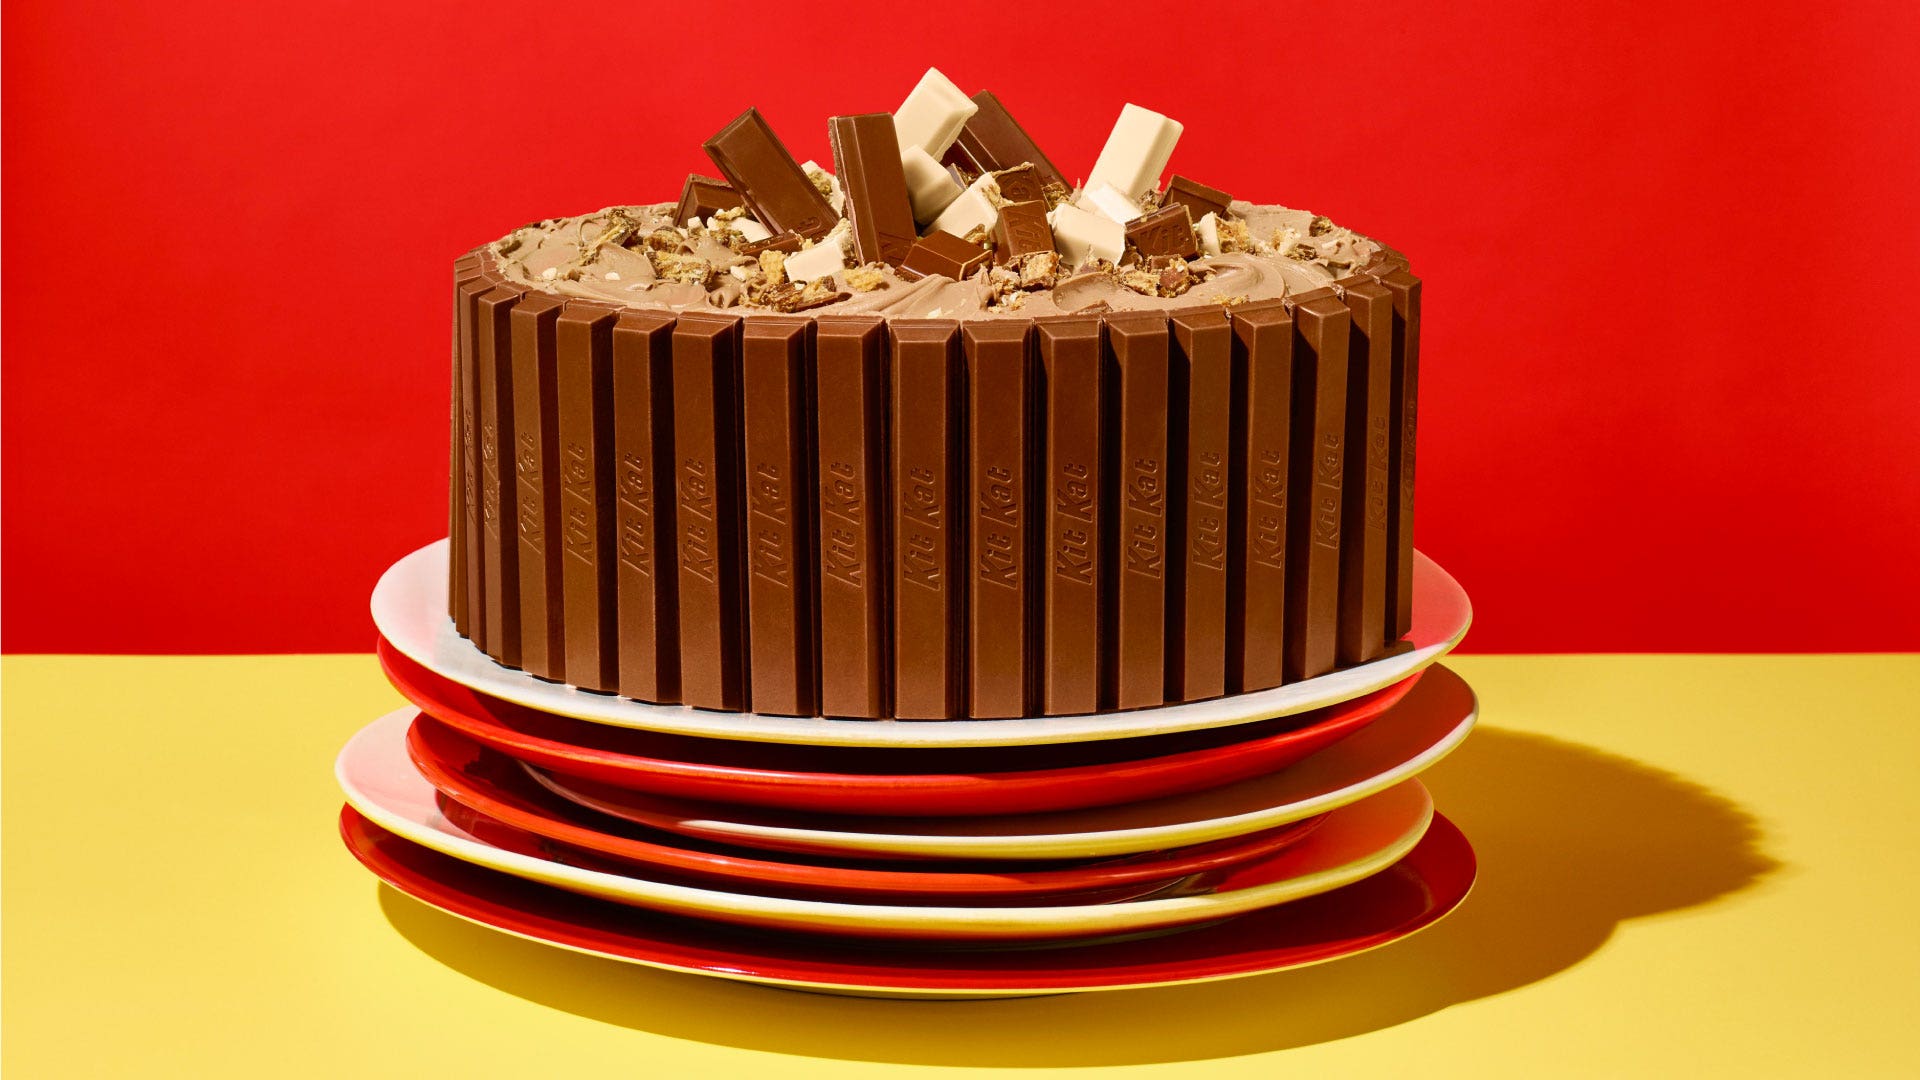 kit kat chocolate layer cake